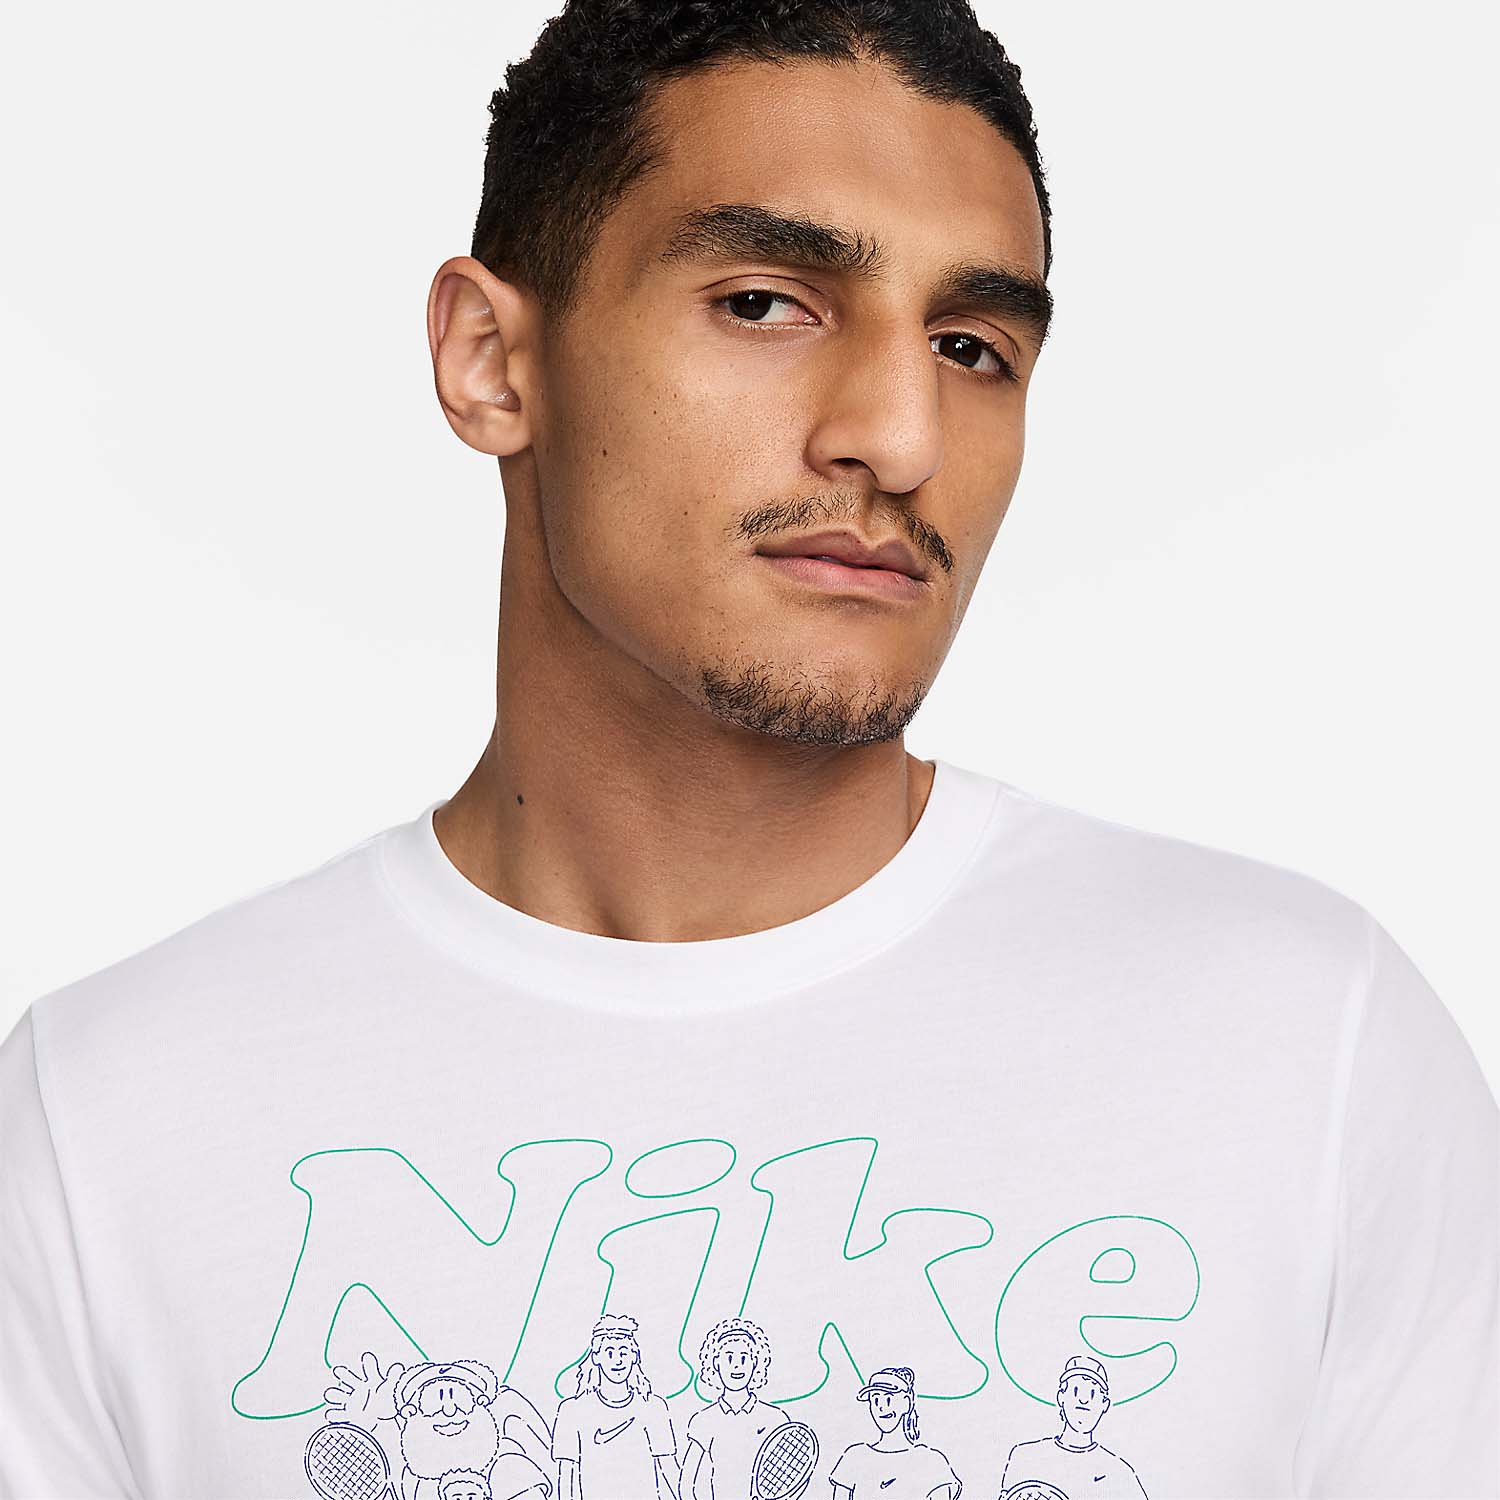 Nike Court Camiseta - White